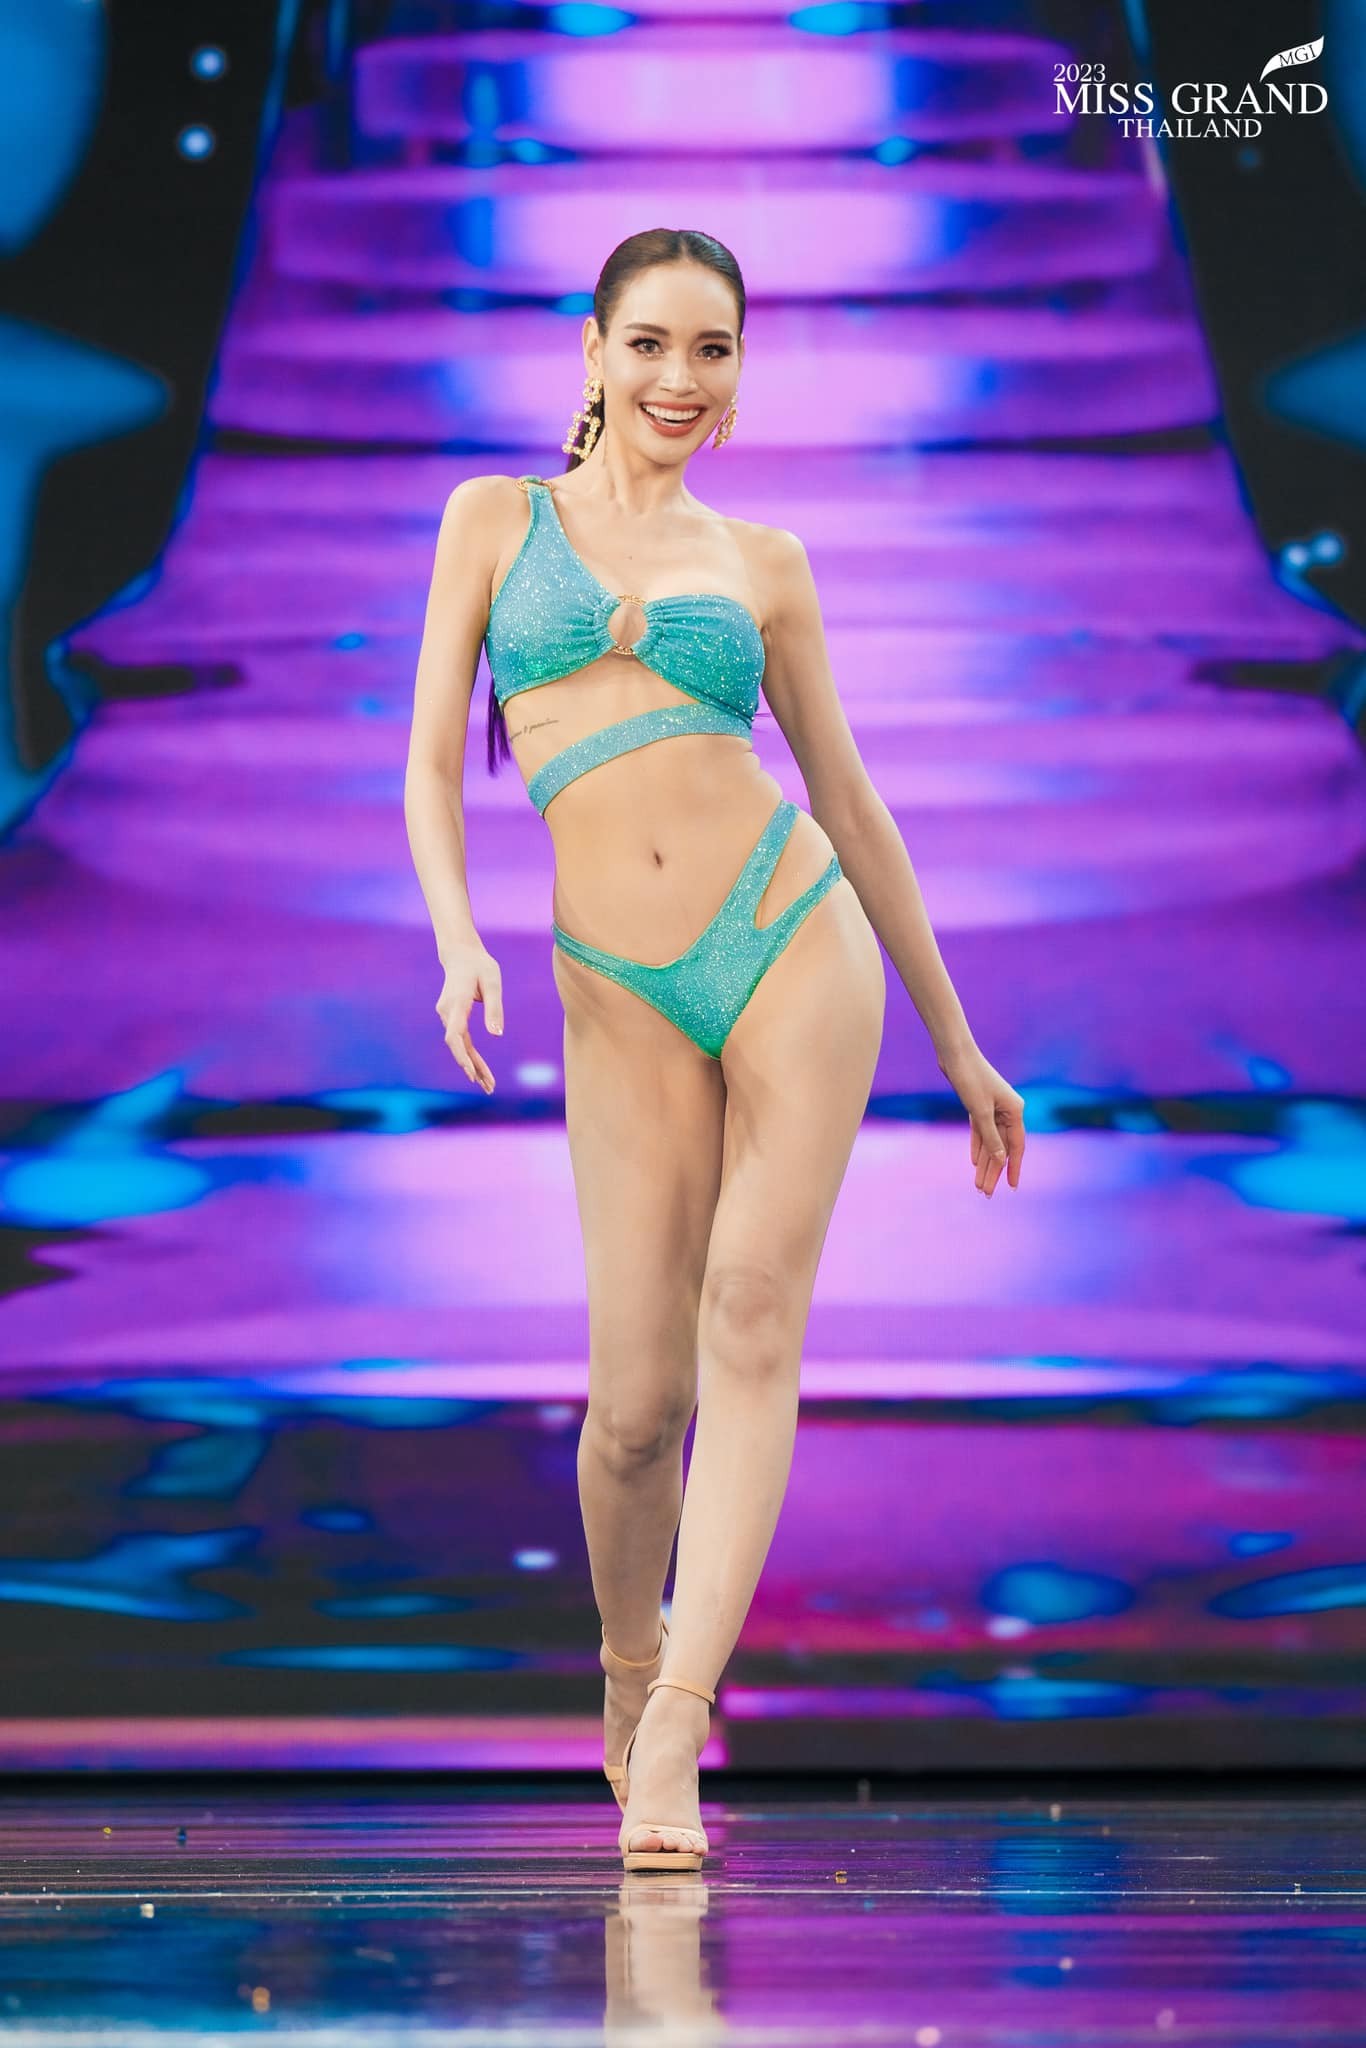 Người đẹp gốc Việt diễn bikini ở bán kết Hoa hậu Hòa bình Thái Lan - Ảnh 3.